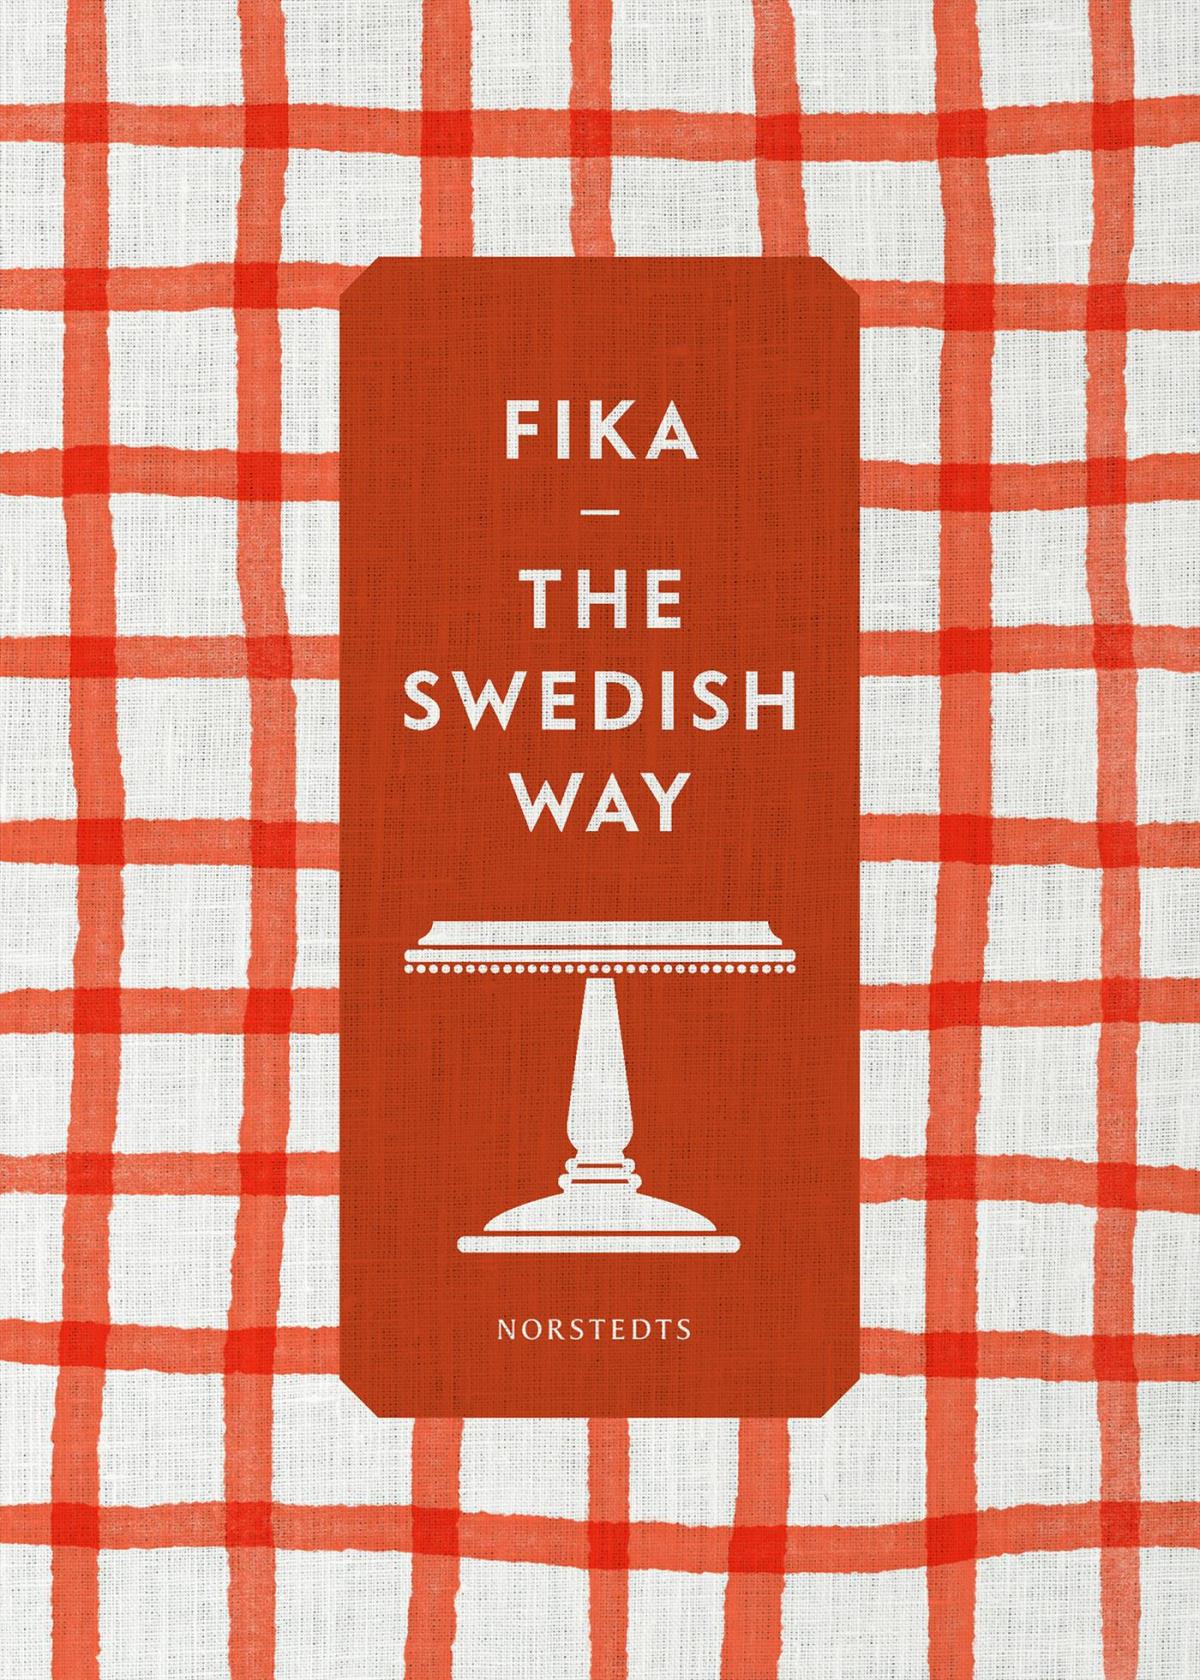 Fika - The Swedish Way